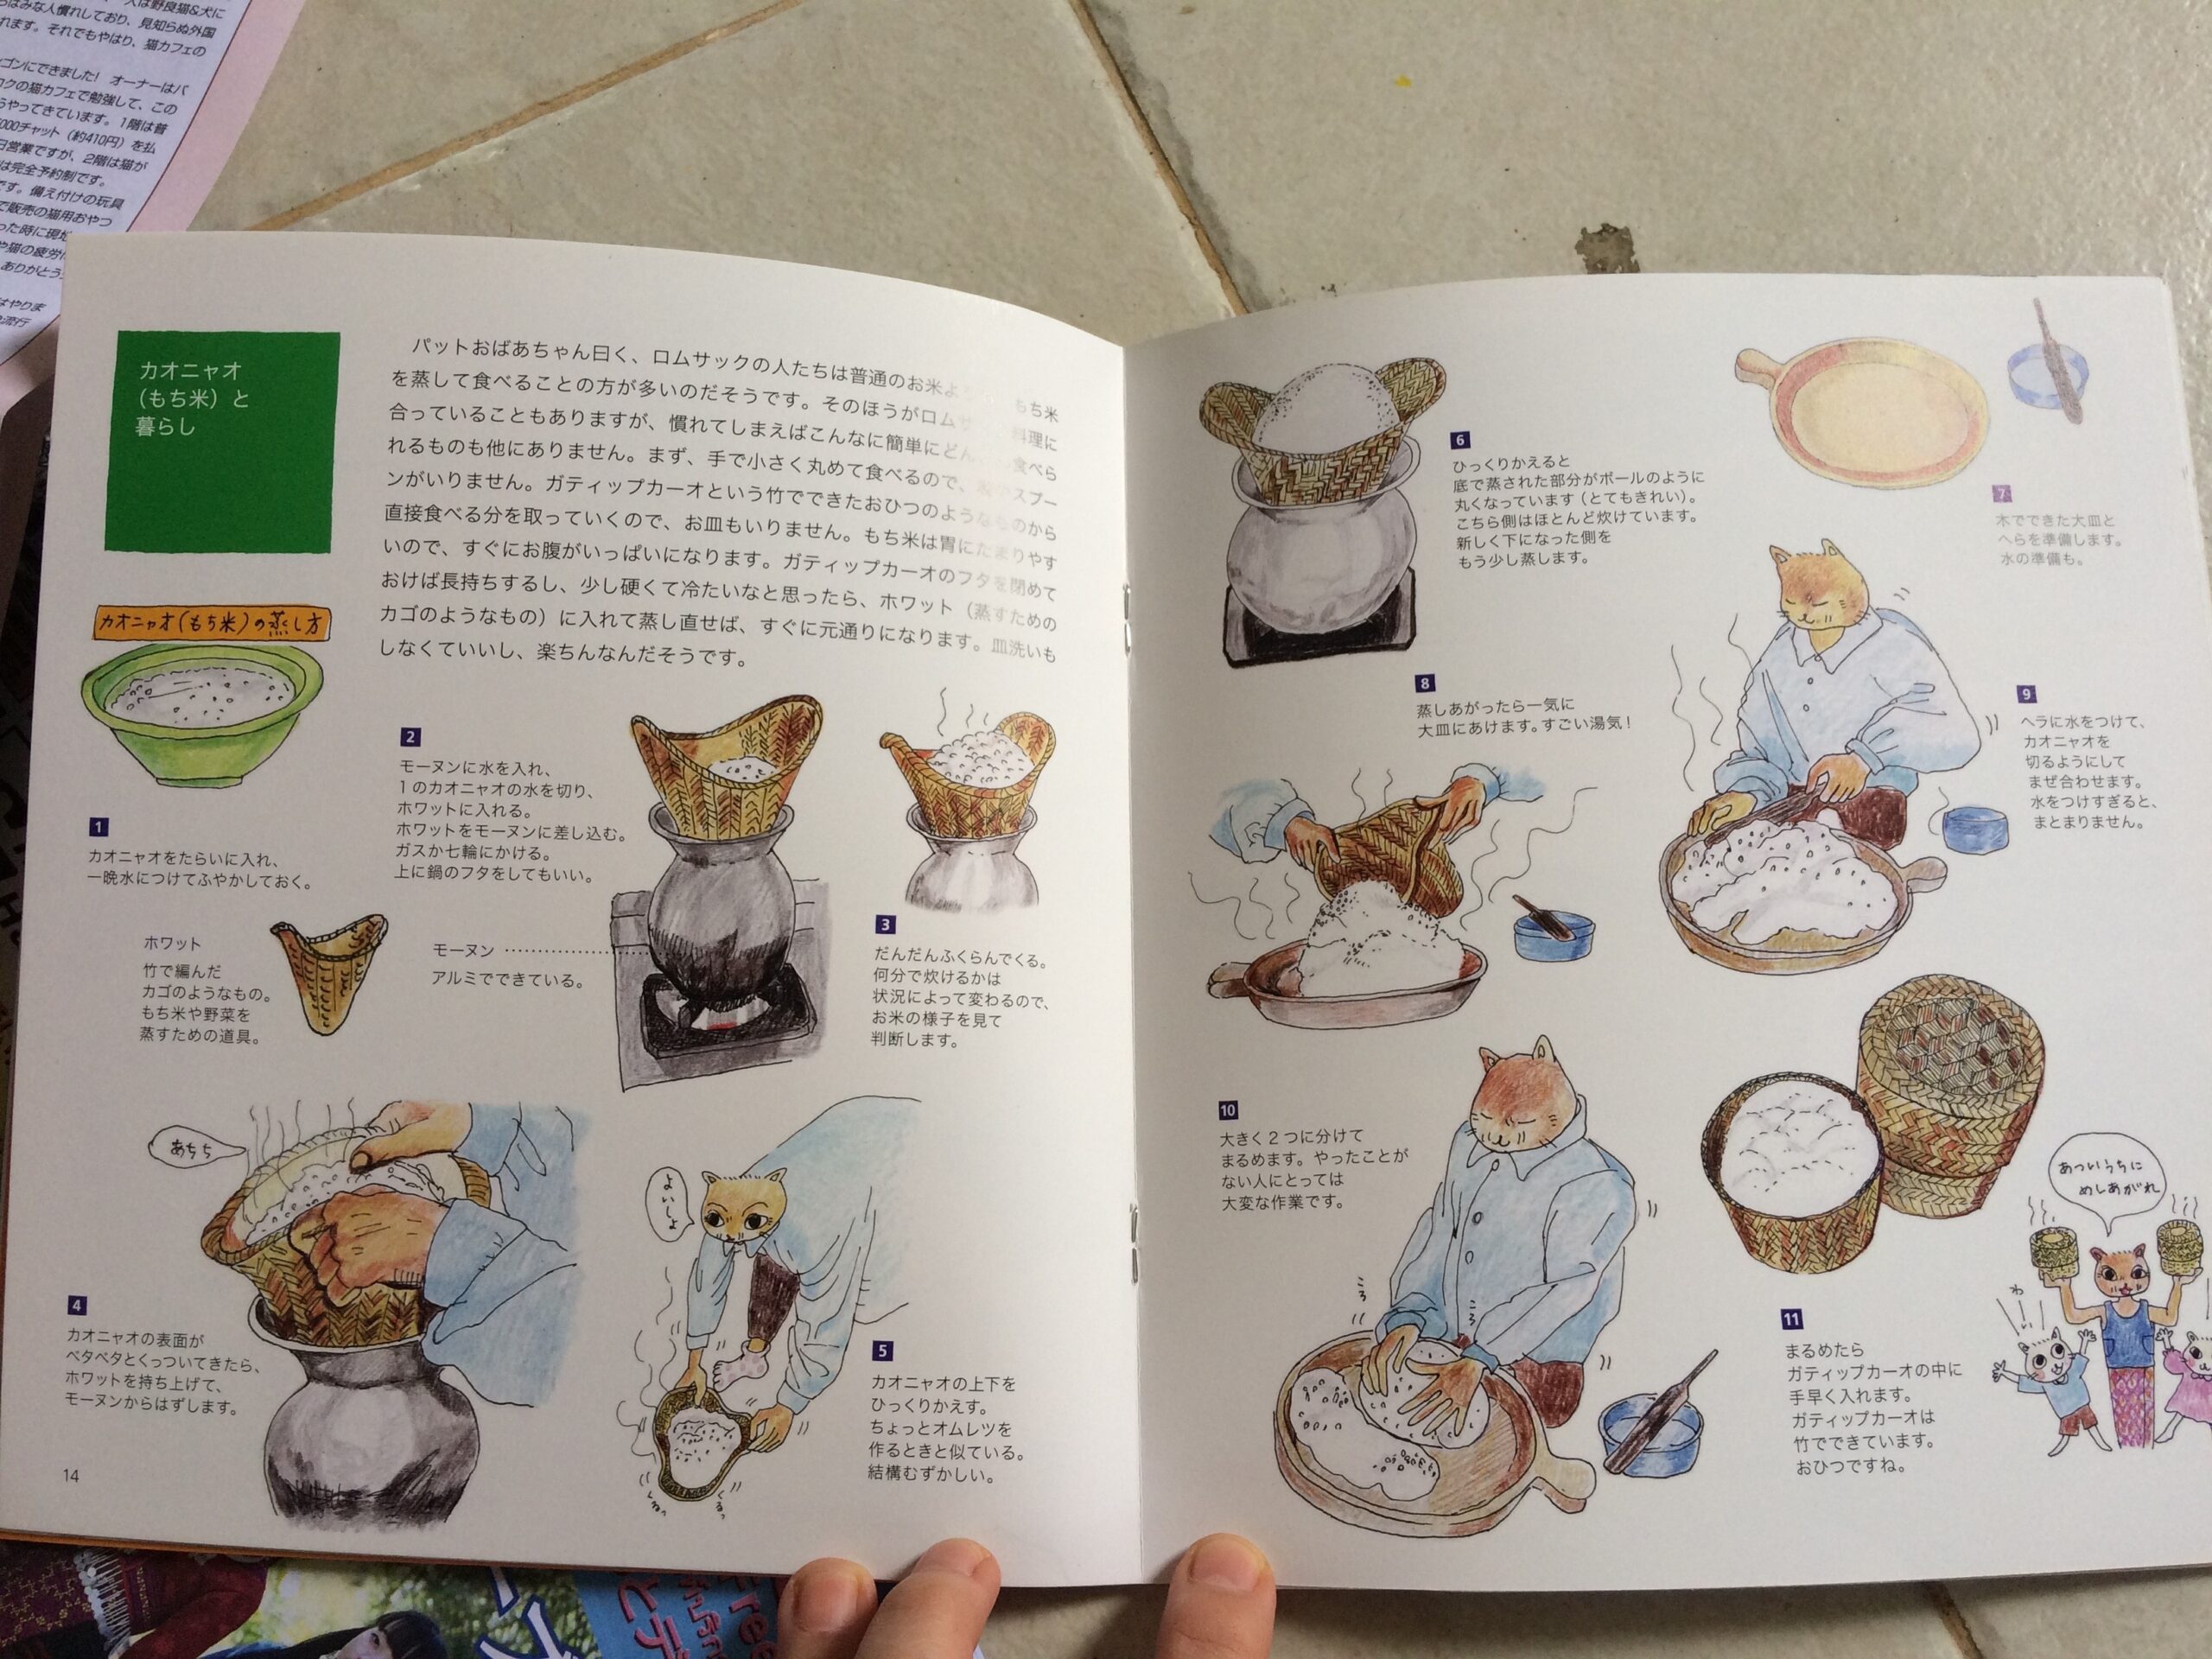 การ์ตูนหัวเป็นแมว ตัวเป็นคน เรื่องแม่สามีทำปลาร้าส่งไปขายในญี่ปุ่น